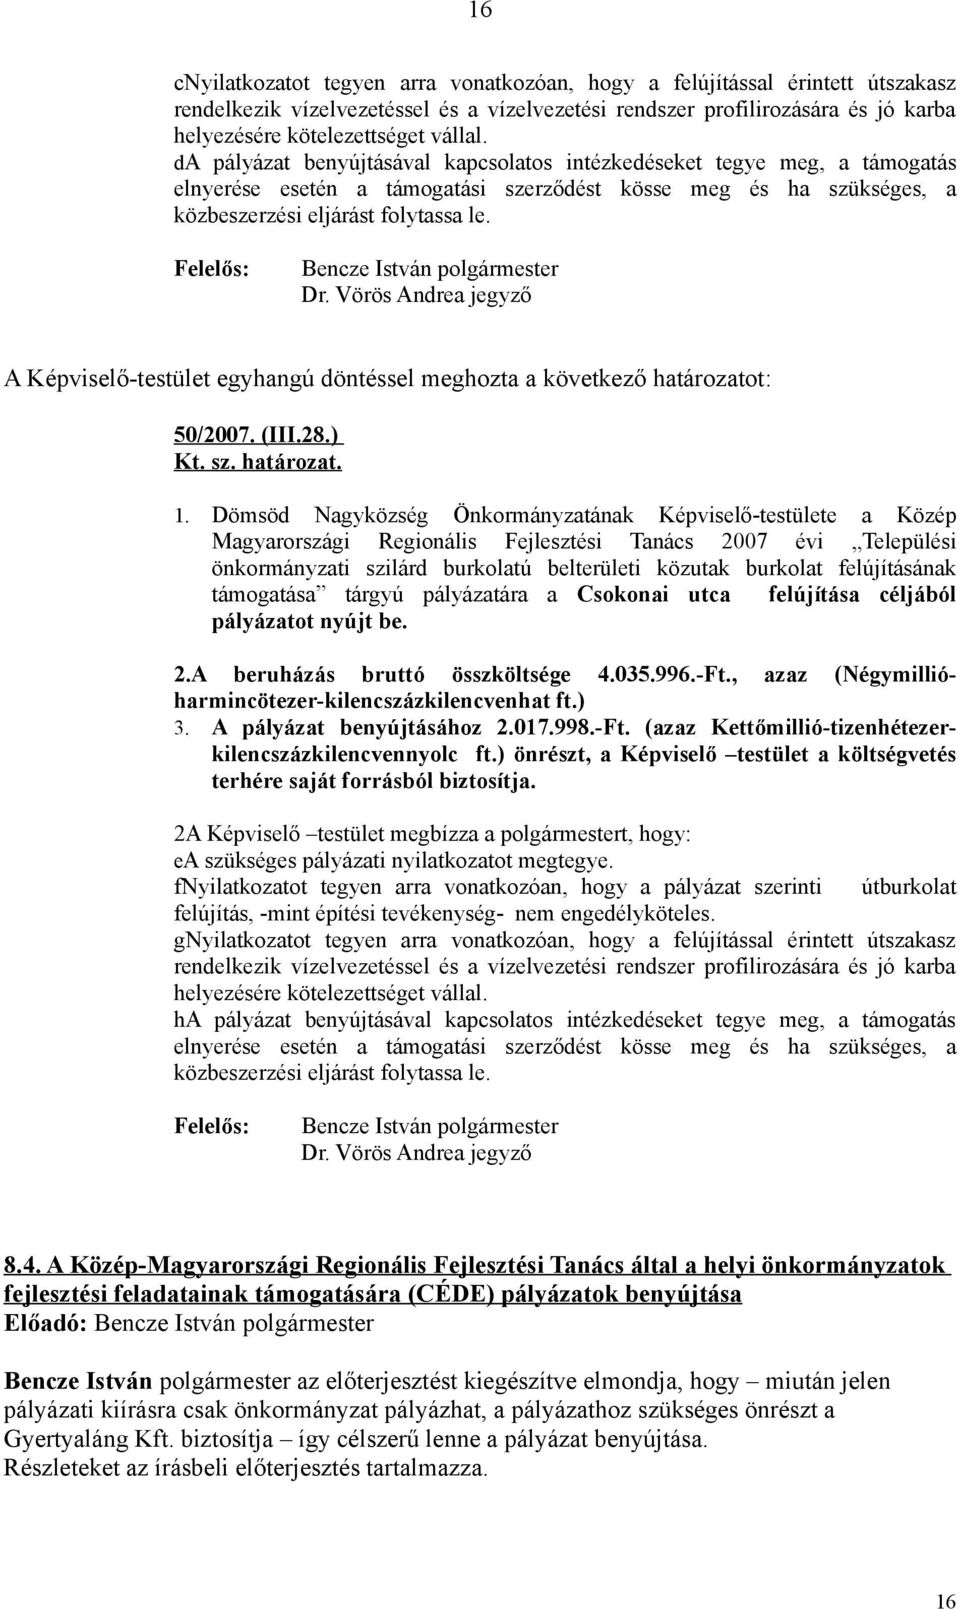 Felelős: Bencze István polgármester Dr. Vörös Andrea jegyző A Képviselő-testület egyhangú döntéssel meghozta a következő határozatot: 50/2007. (III.28.) Kt. sz. határozat. 1.